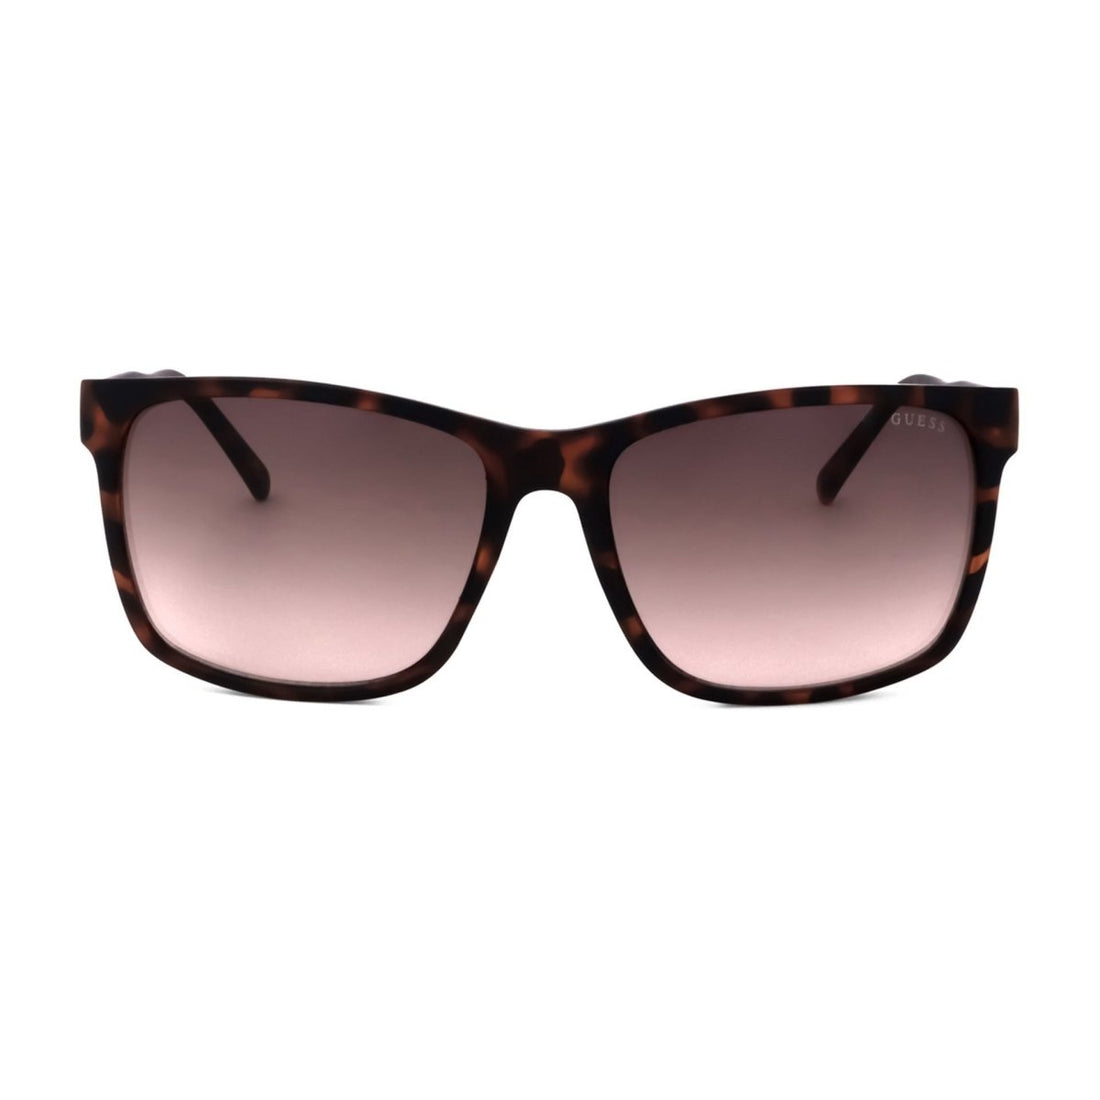 Guess Sunglasses - TINT - Sunglasses - Guess - GF5082_52F:382320